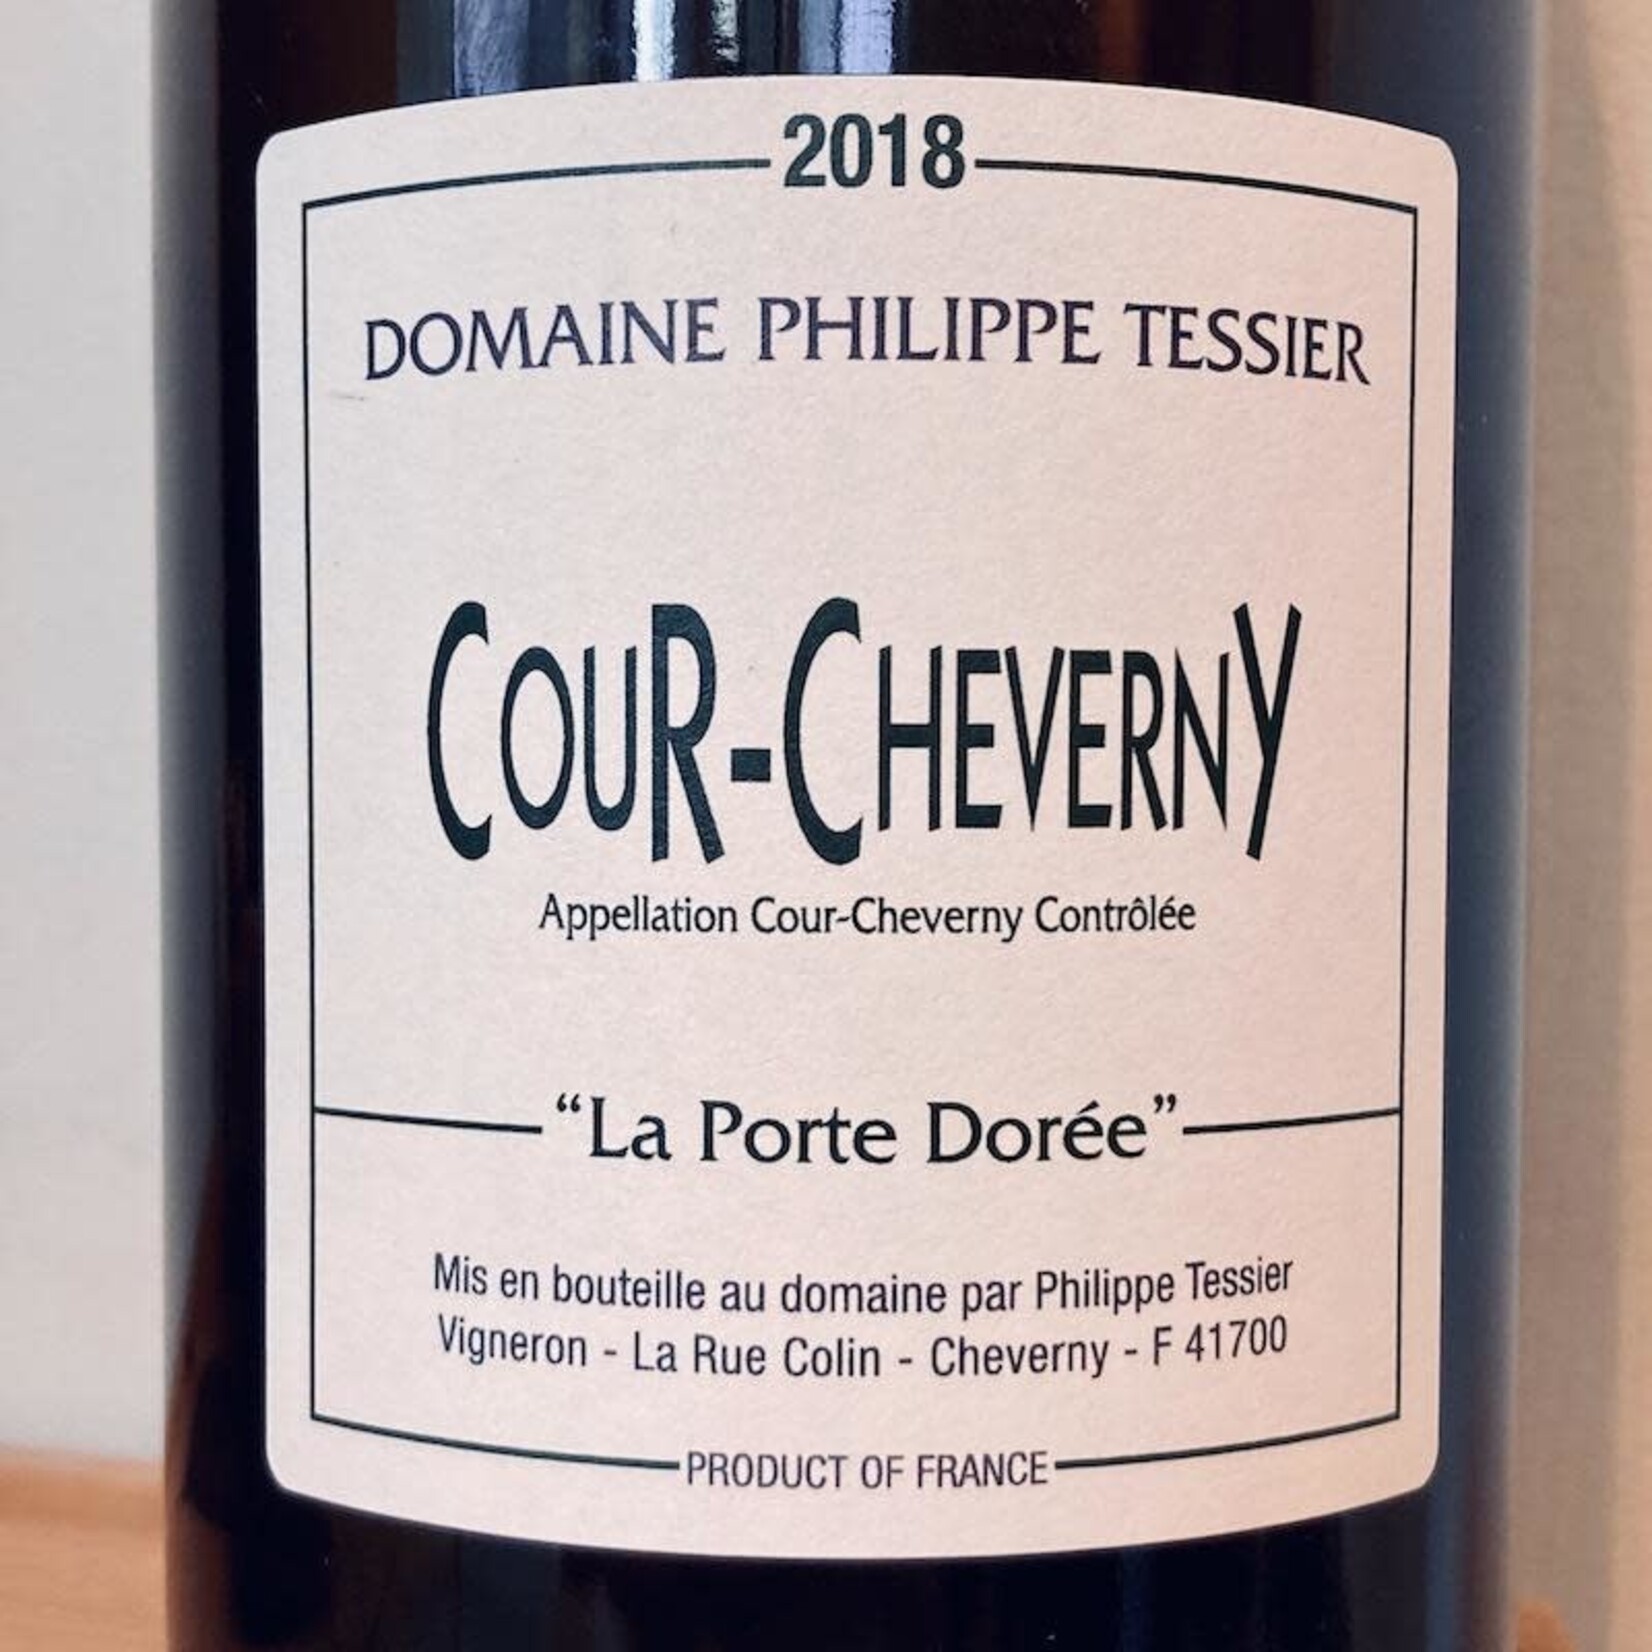 France 2019 Domaine Philippe Tessier Cour-Cheverny “La Porte Doree”